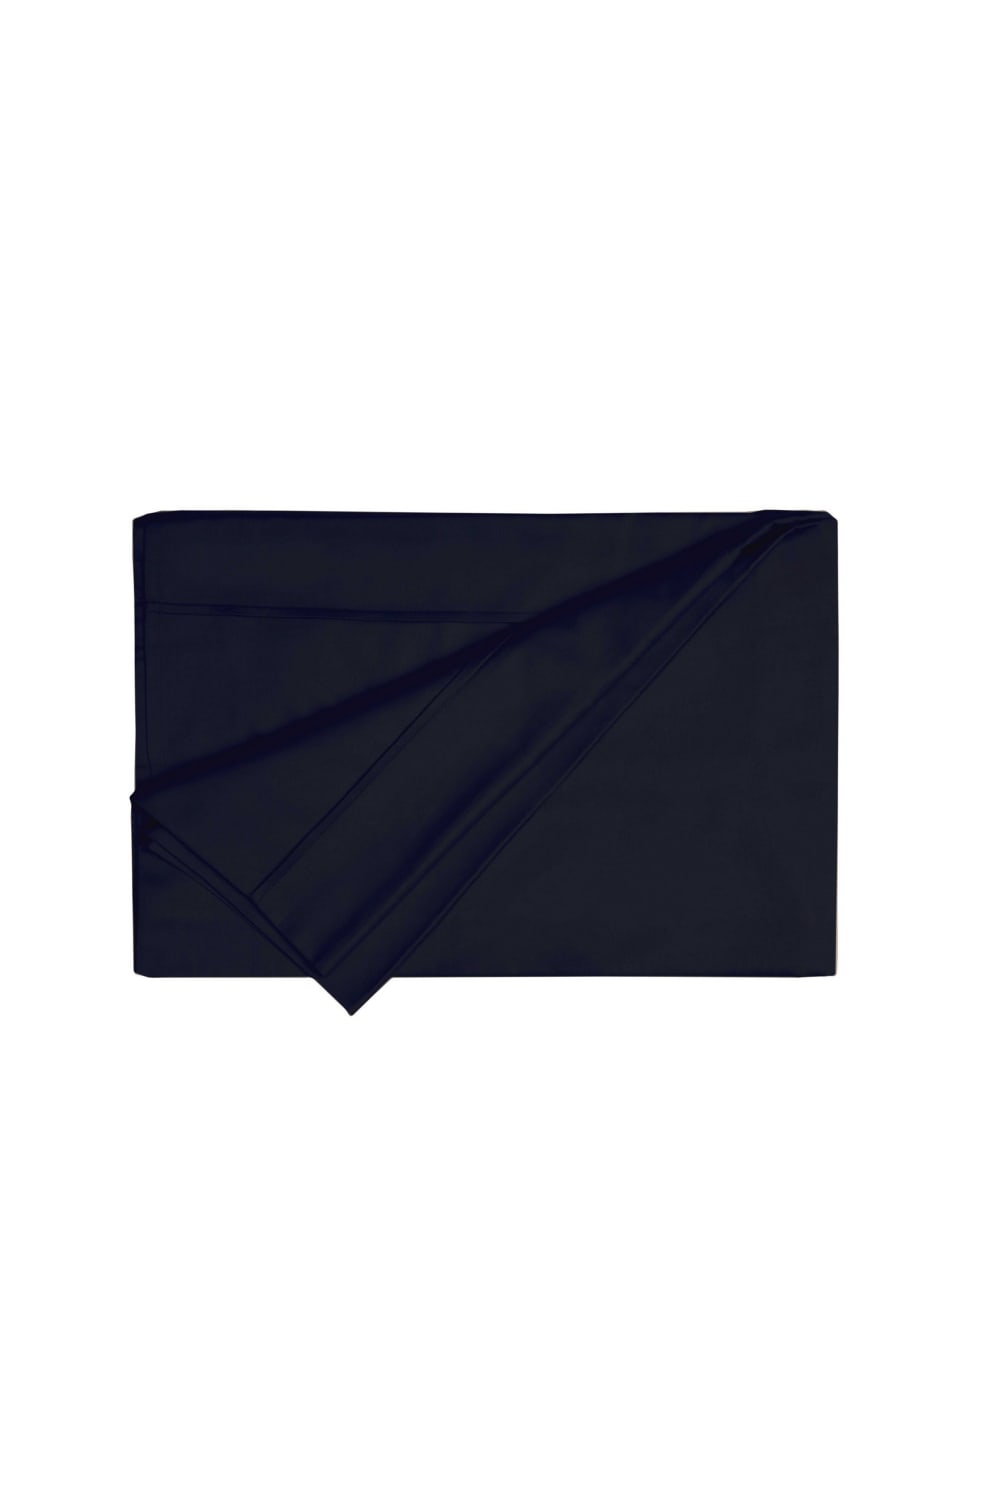 Belledorm 200 Thread Count Egyptian Cotton Flat Sheet (Black) (Queen) (UK - Kingsize)